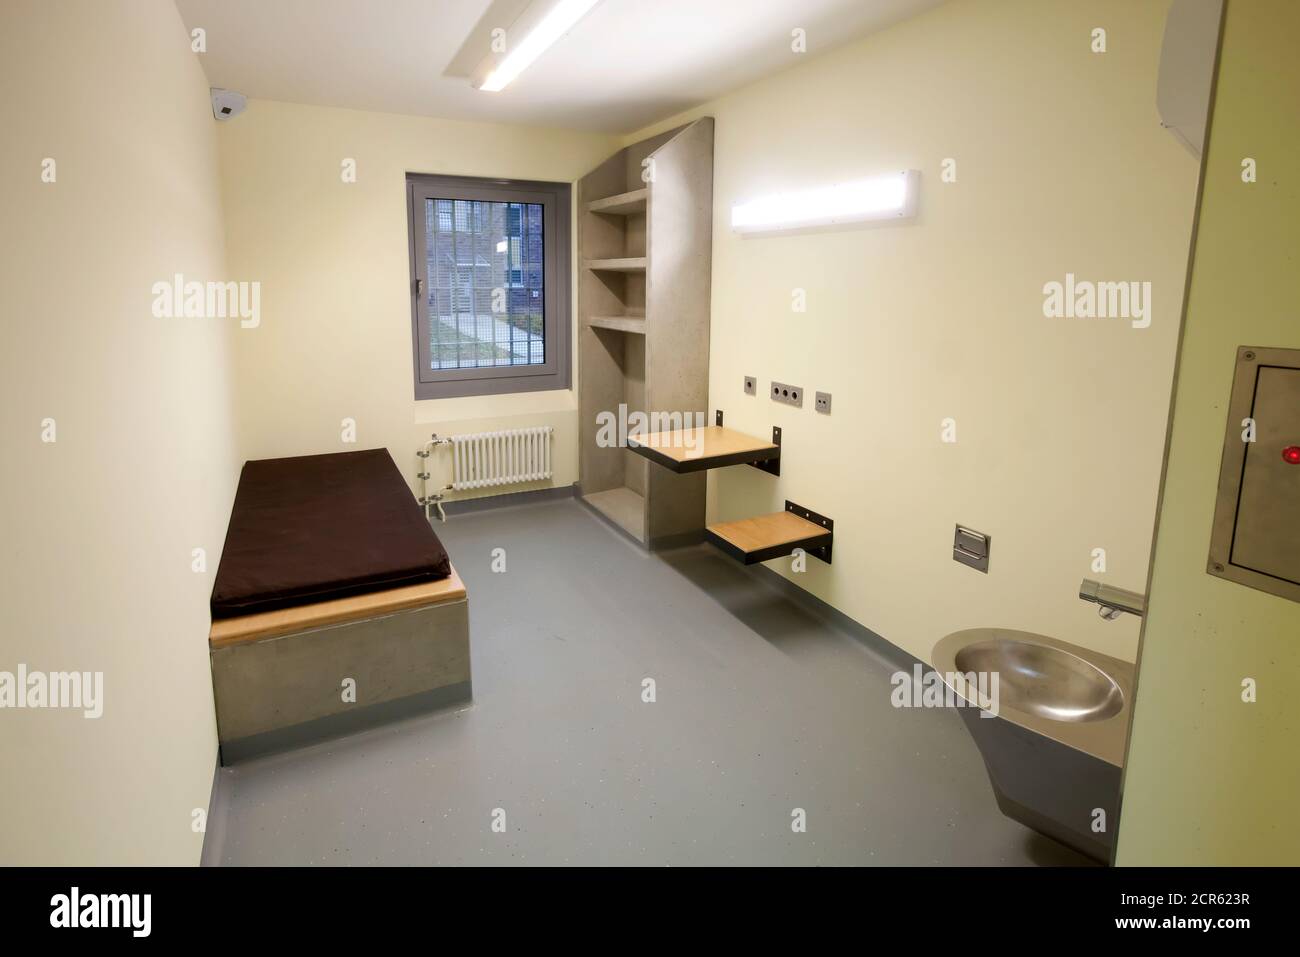 Gefängniszelle, einfache Zelle für randalierte Häftlinge, Gefängnis, Strafanstalt Düsseldorf, Nordrhein-Westfalen, Deutschland Stockfoto